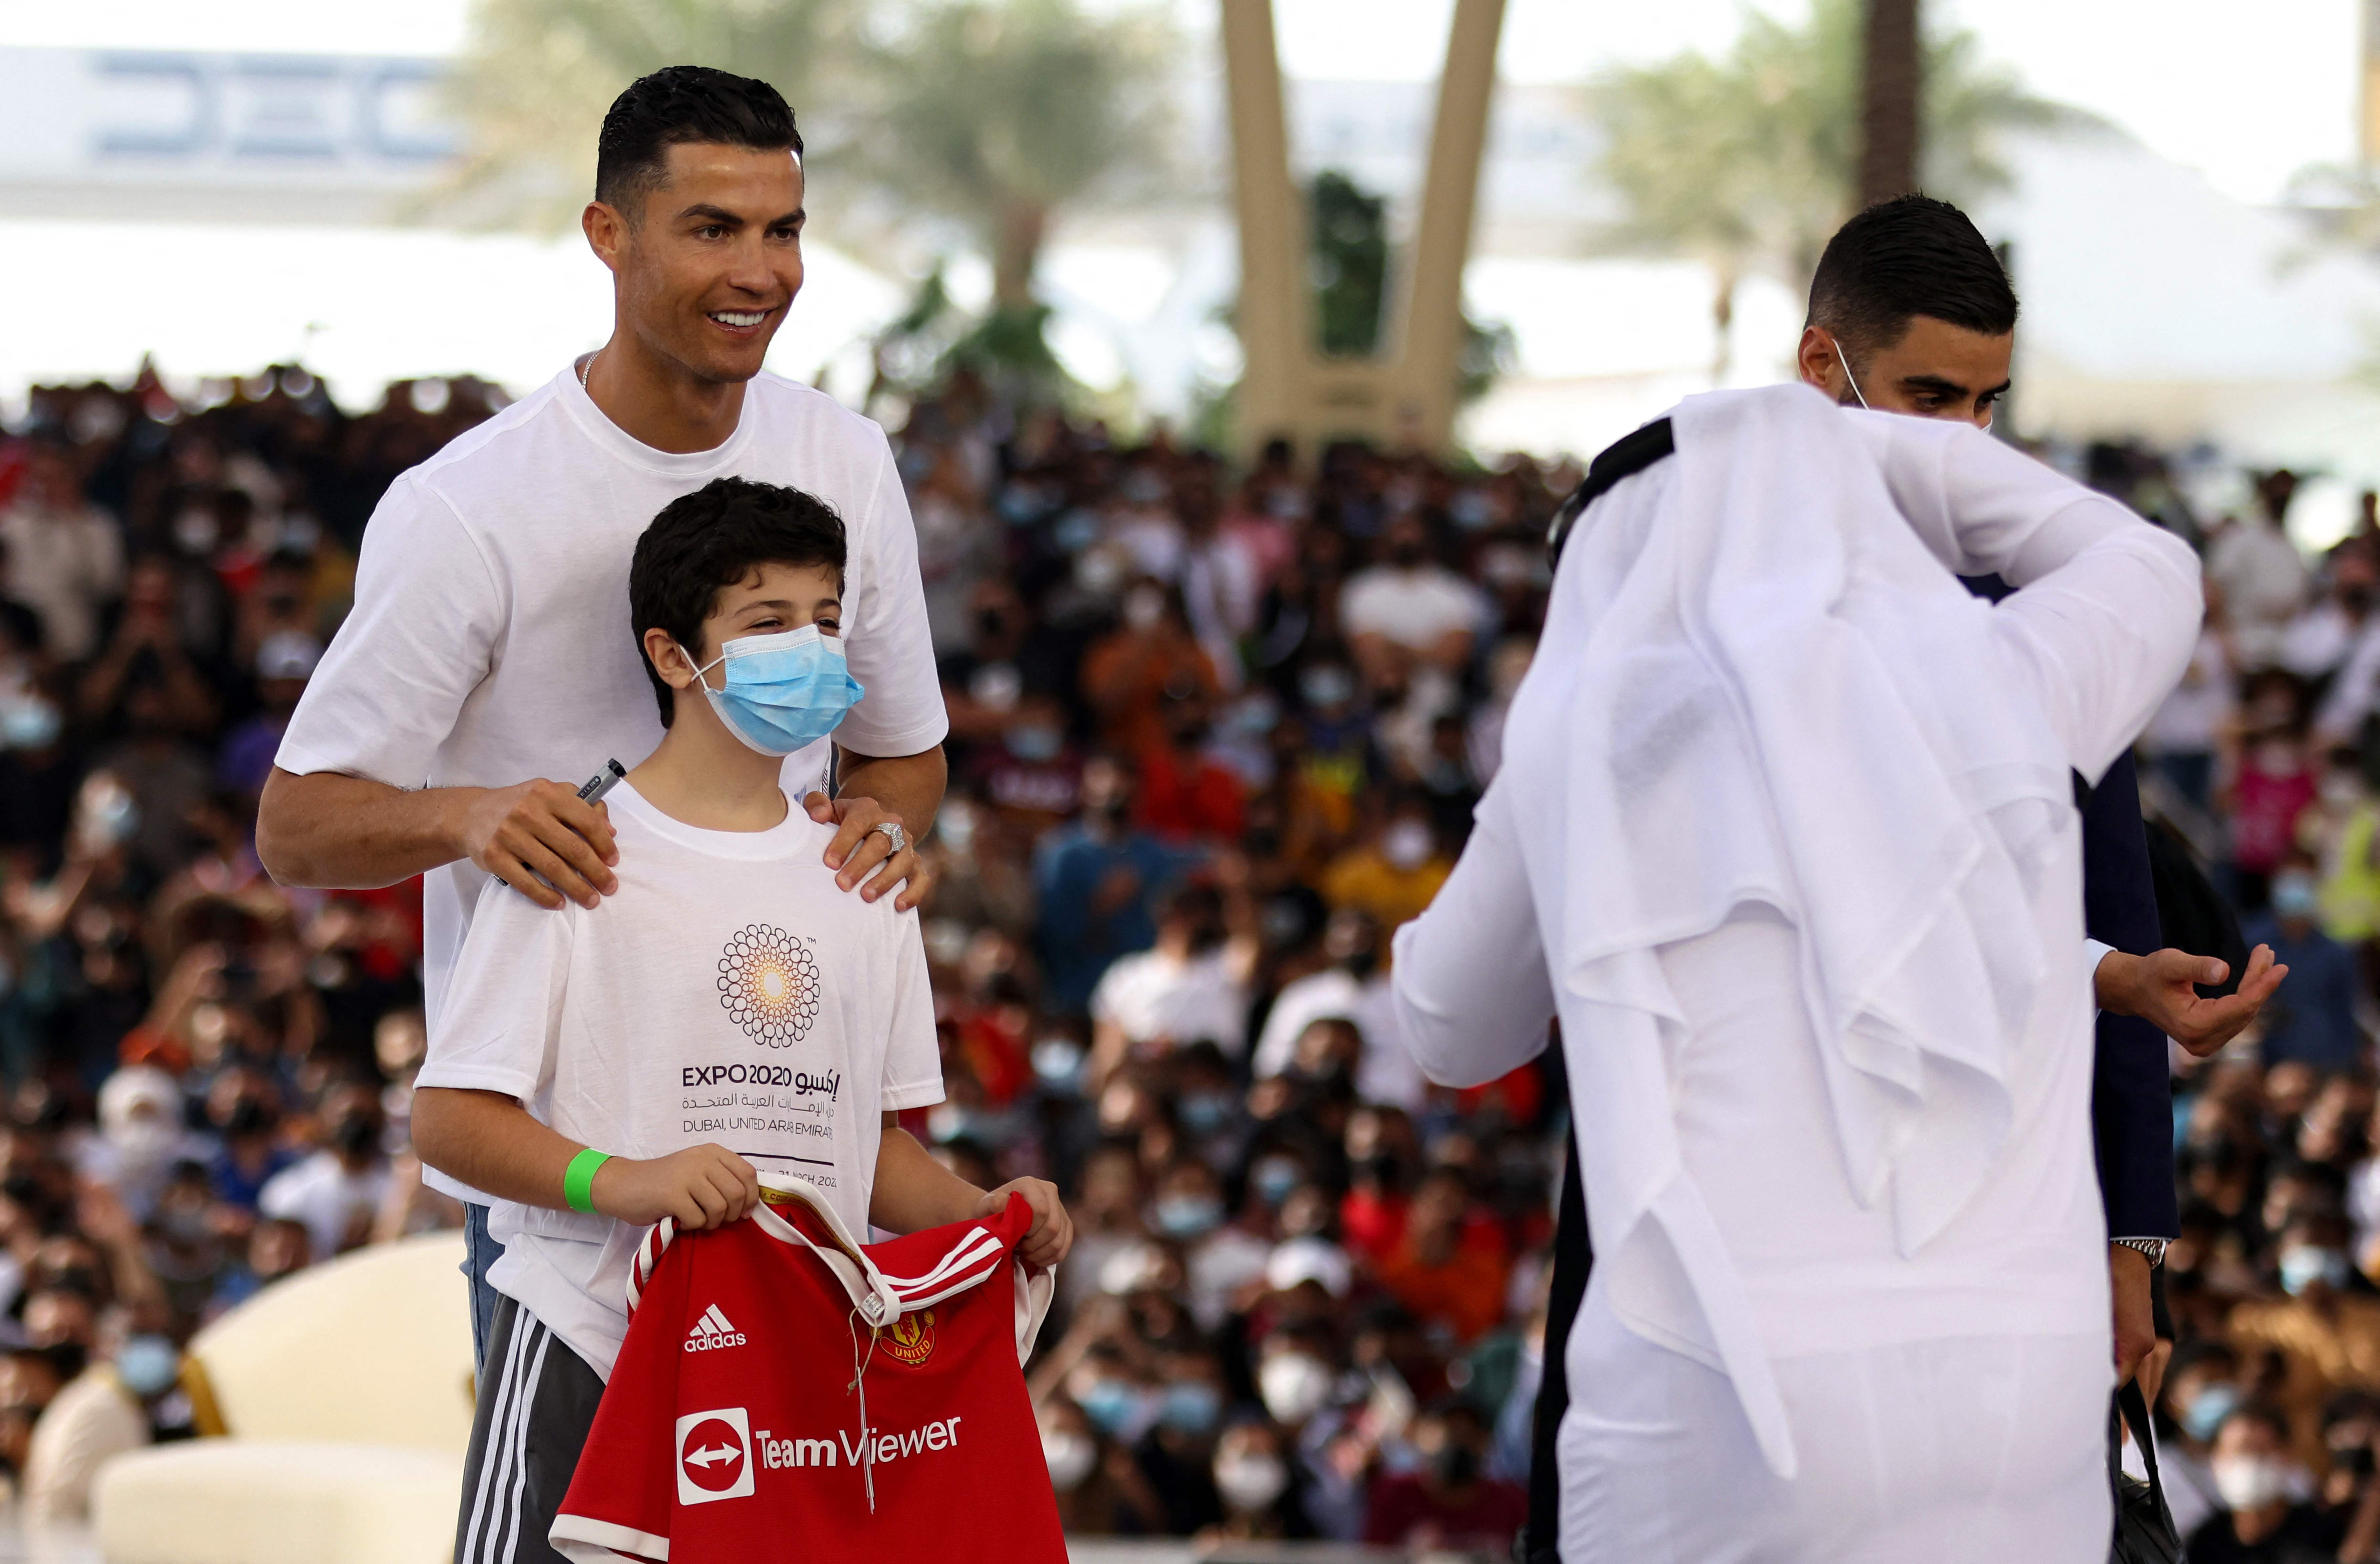 El delantero portugués del Manchester United, Cristiano Ronaldo posa con un niño en el al-Wasl Dome, durante su visita a la Expo 2020, en Dubai. Foto Prensa Libre: AFP.